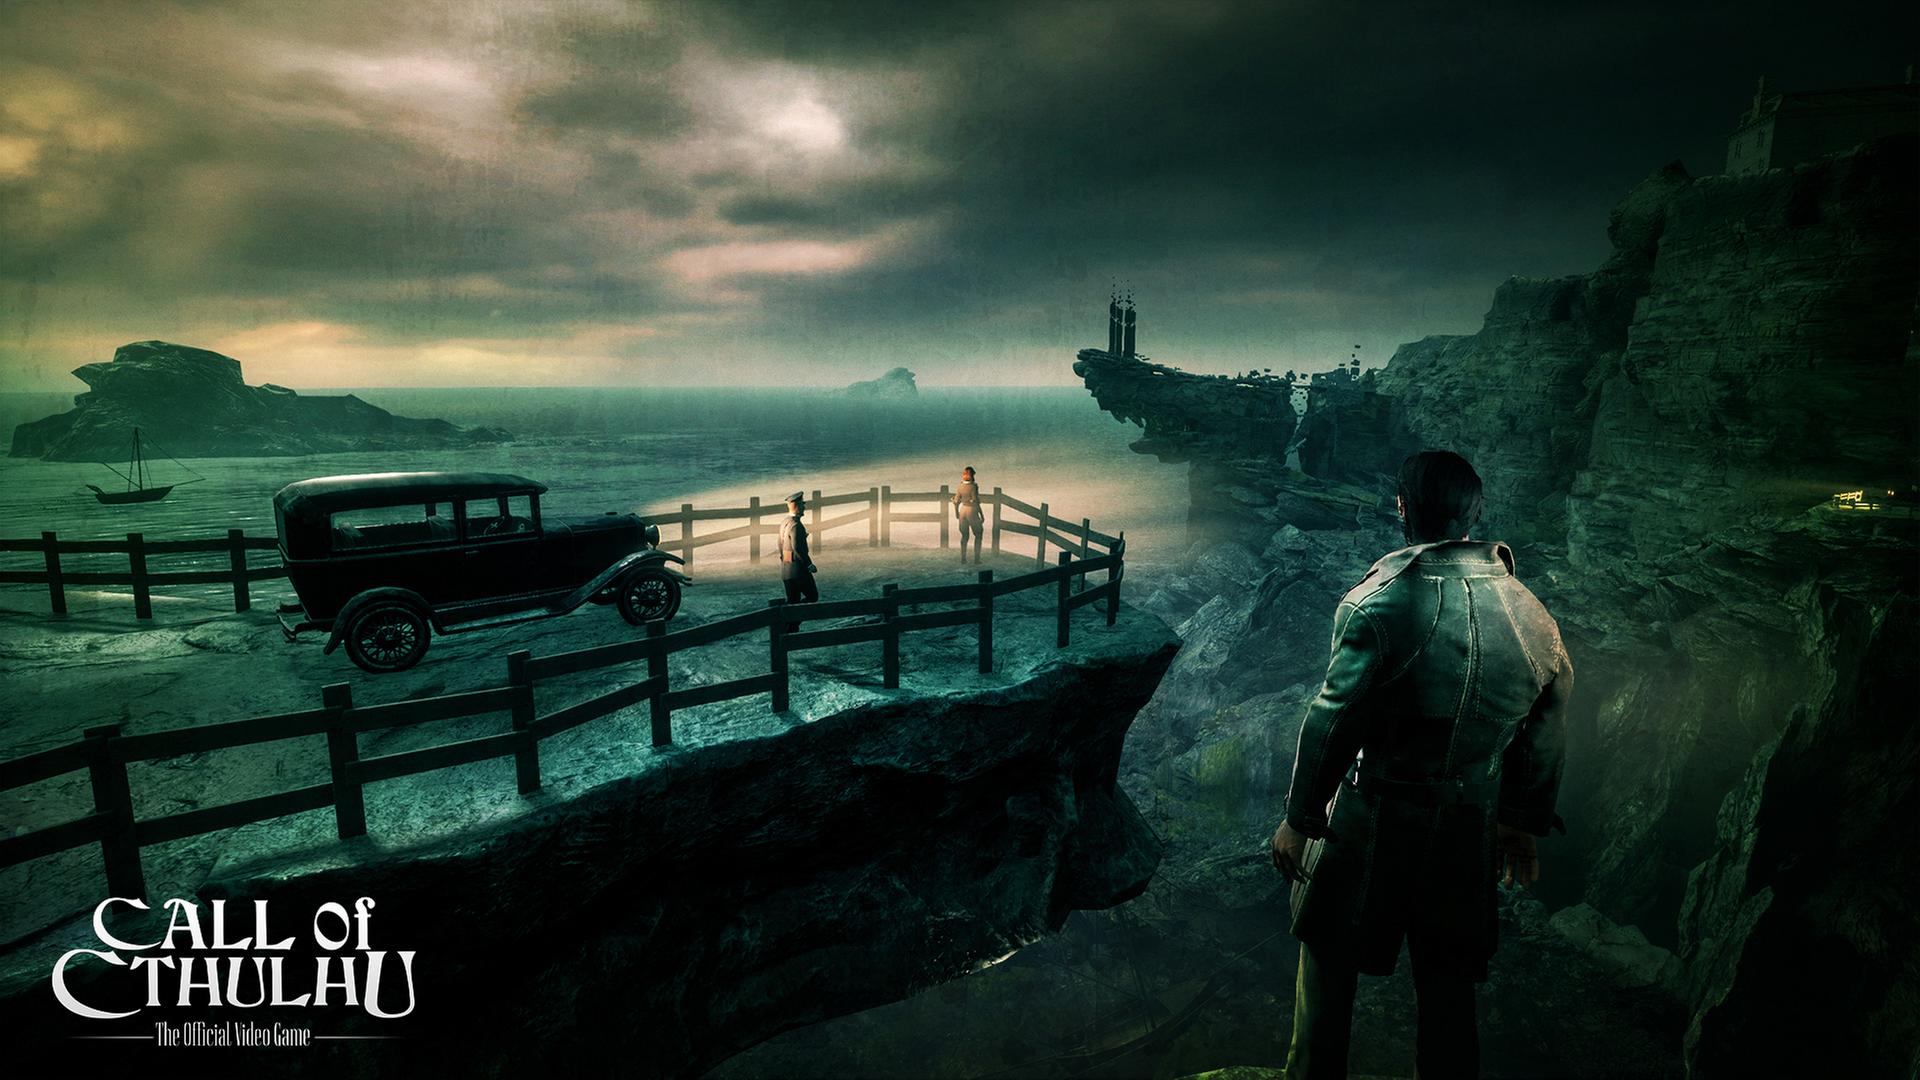 Auf dem Bild ist ein Screenshot aus dem Computerspiel "Call of Cthulhu" zu sehen. Man sieht eine in grün getauchte Küstenlandschaft. Der Protagonist des Spiels blickt auf zwei Menschen, die im Scheinwerferlicht eines Autos stehen.